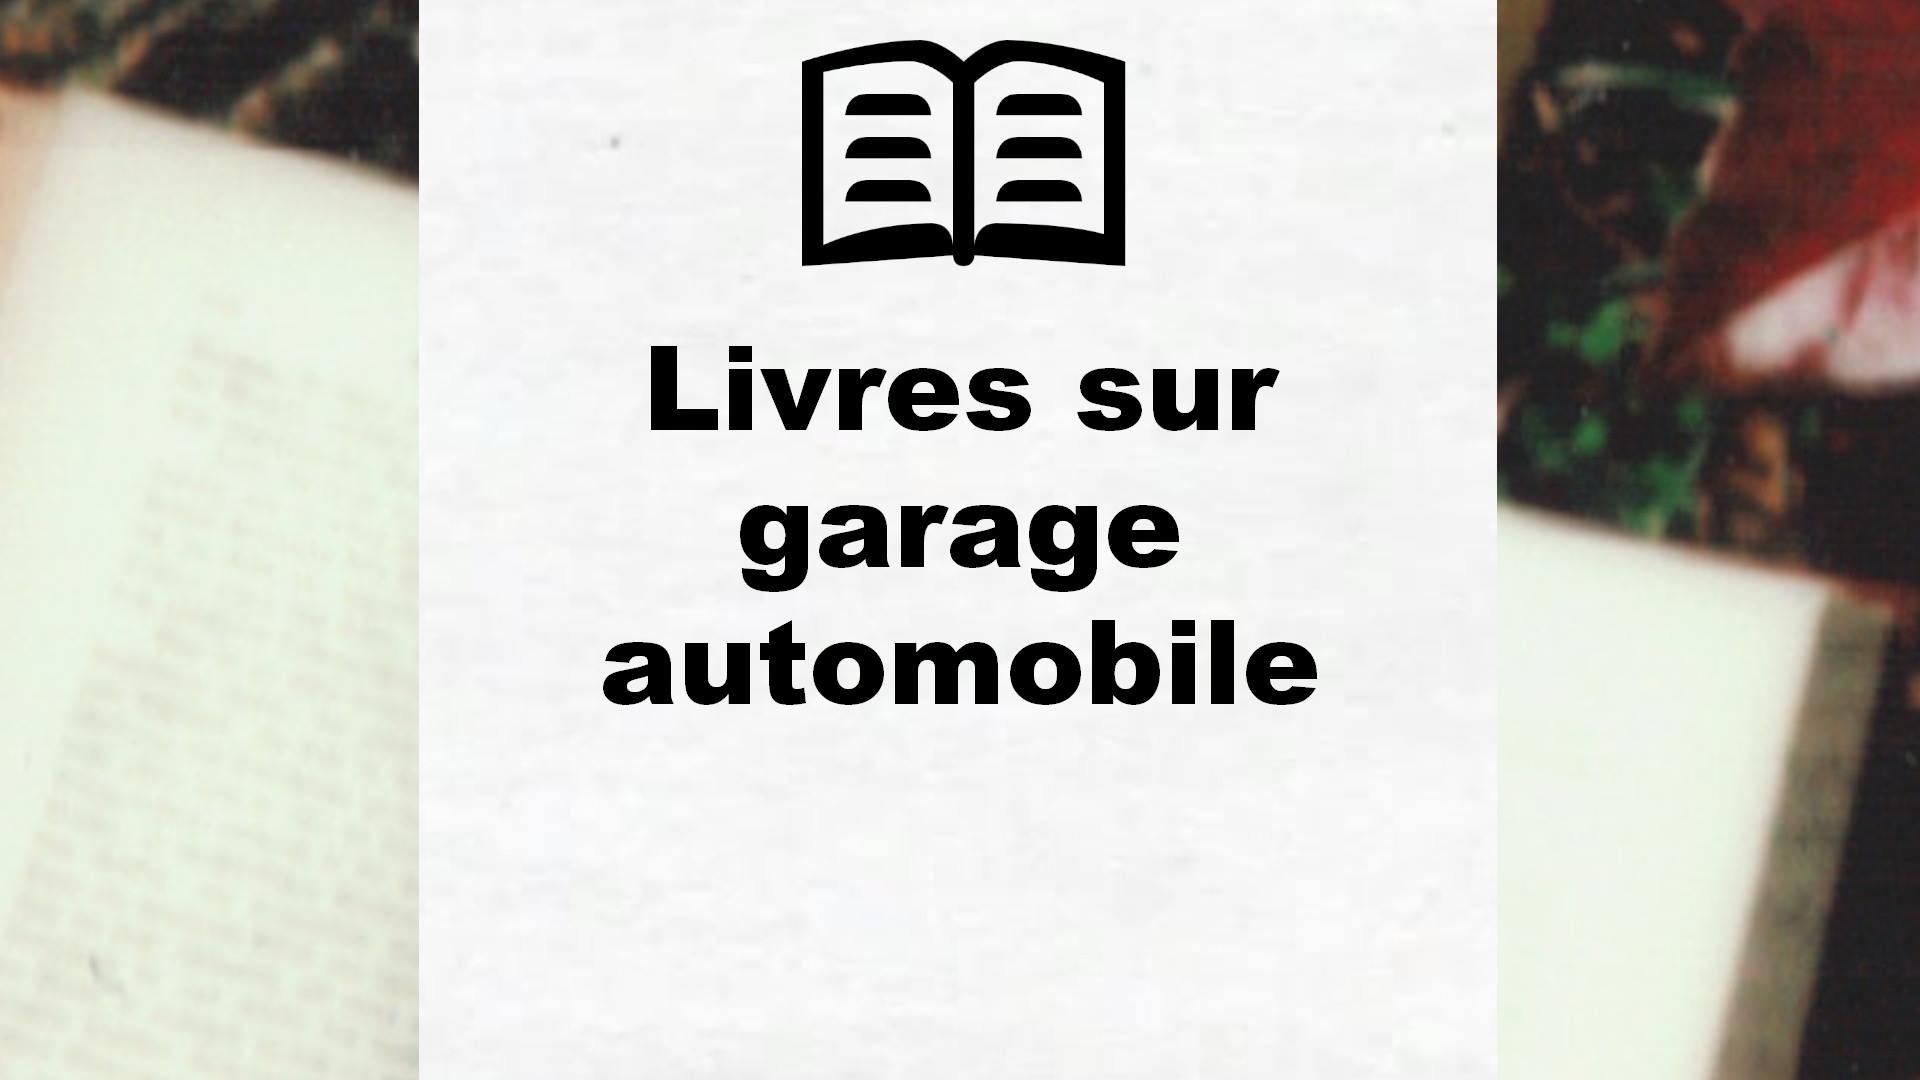 Livres sur garage automobile